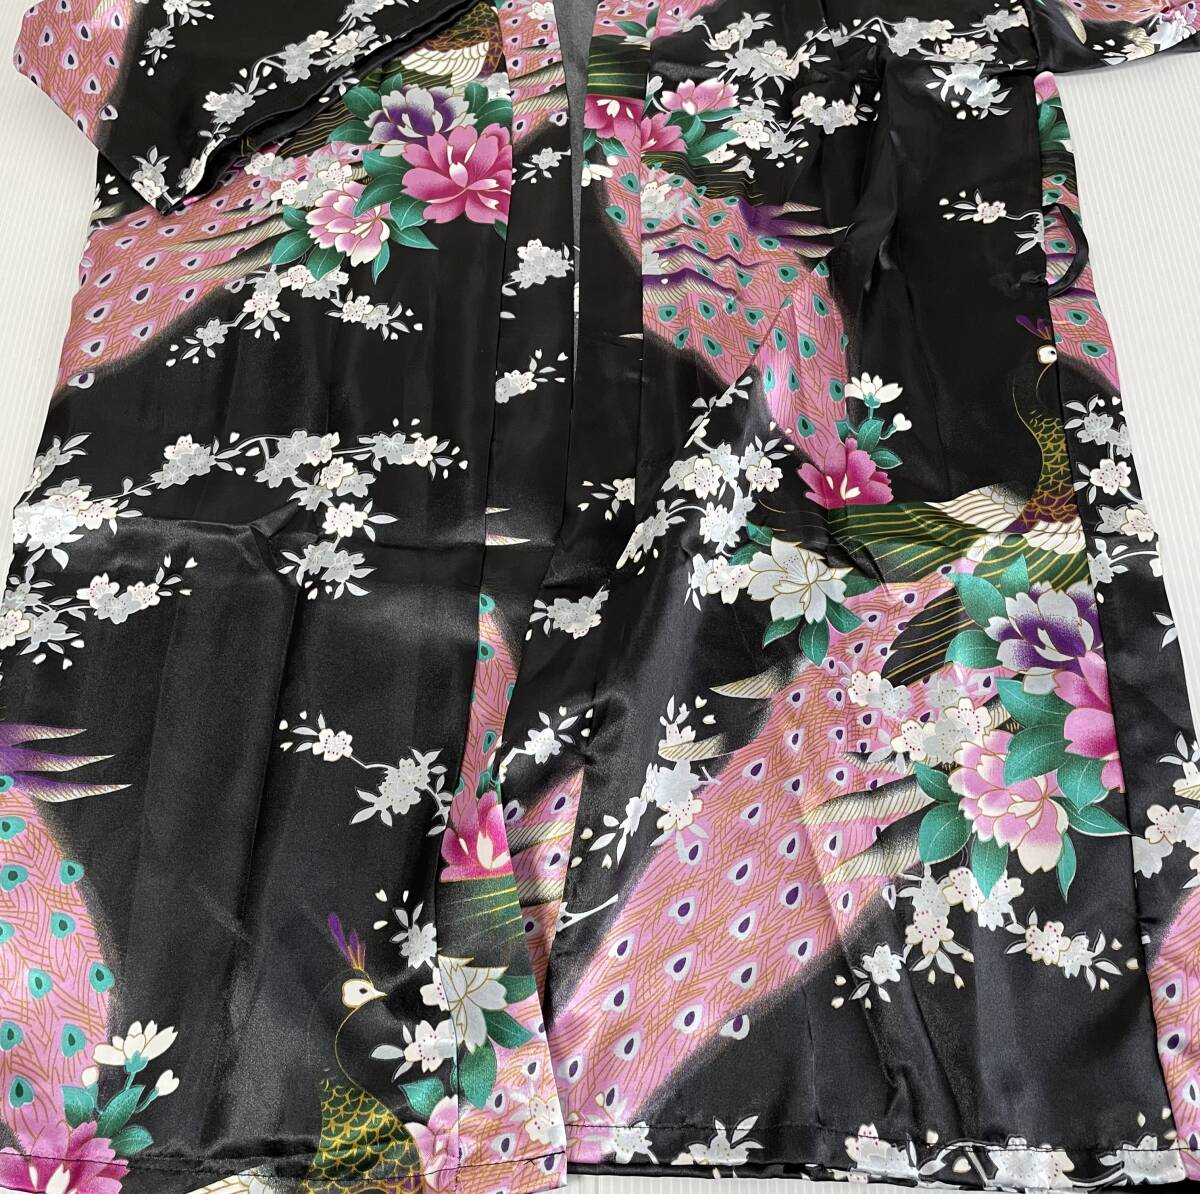  юката кимоно чёрный sexy Ran Jerry костюмы костюм японский стиль салон одежда Night одежда мини длина EJ25